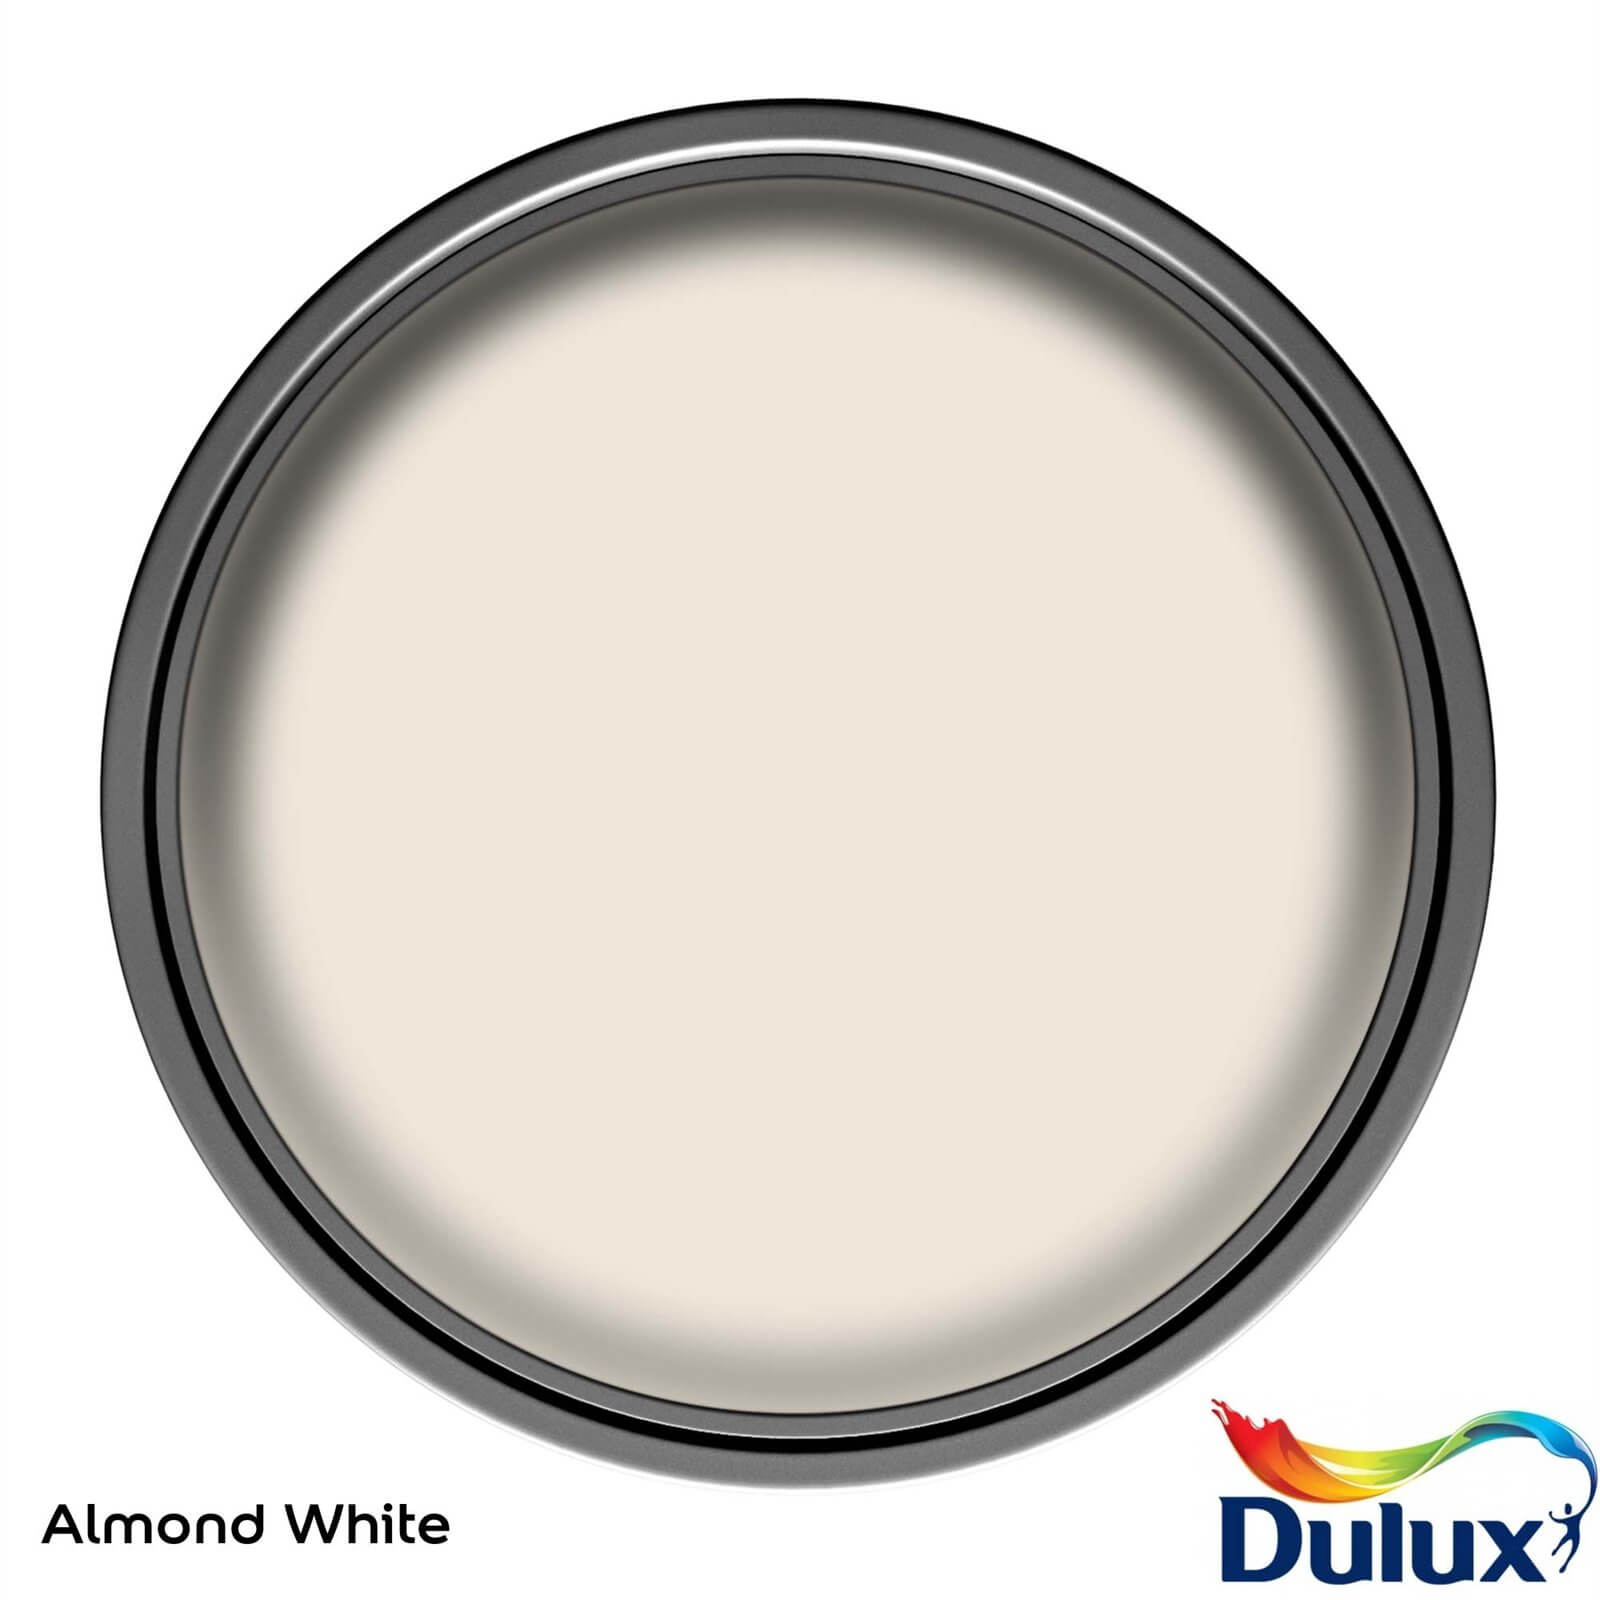 Dulux Weathershield Multi Surface Paint Almond White - 750ml